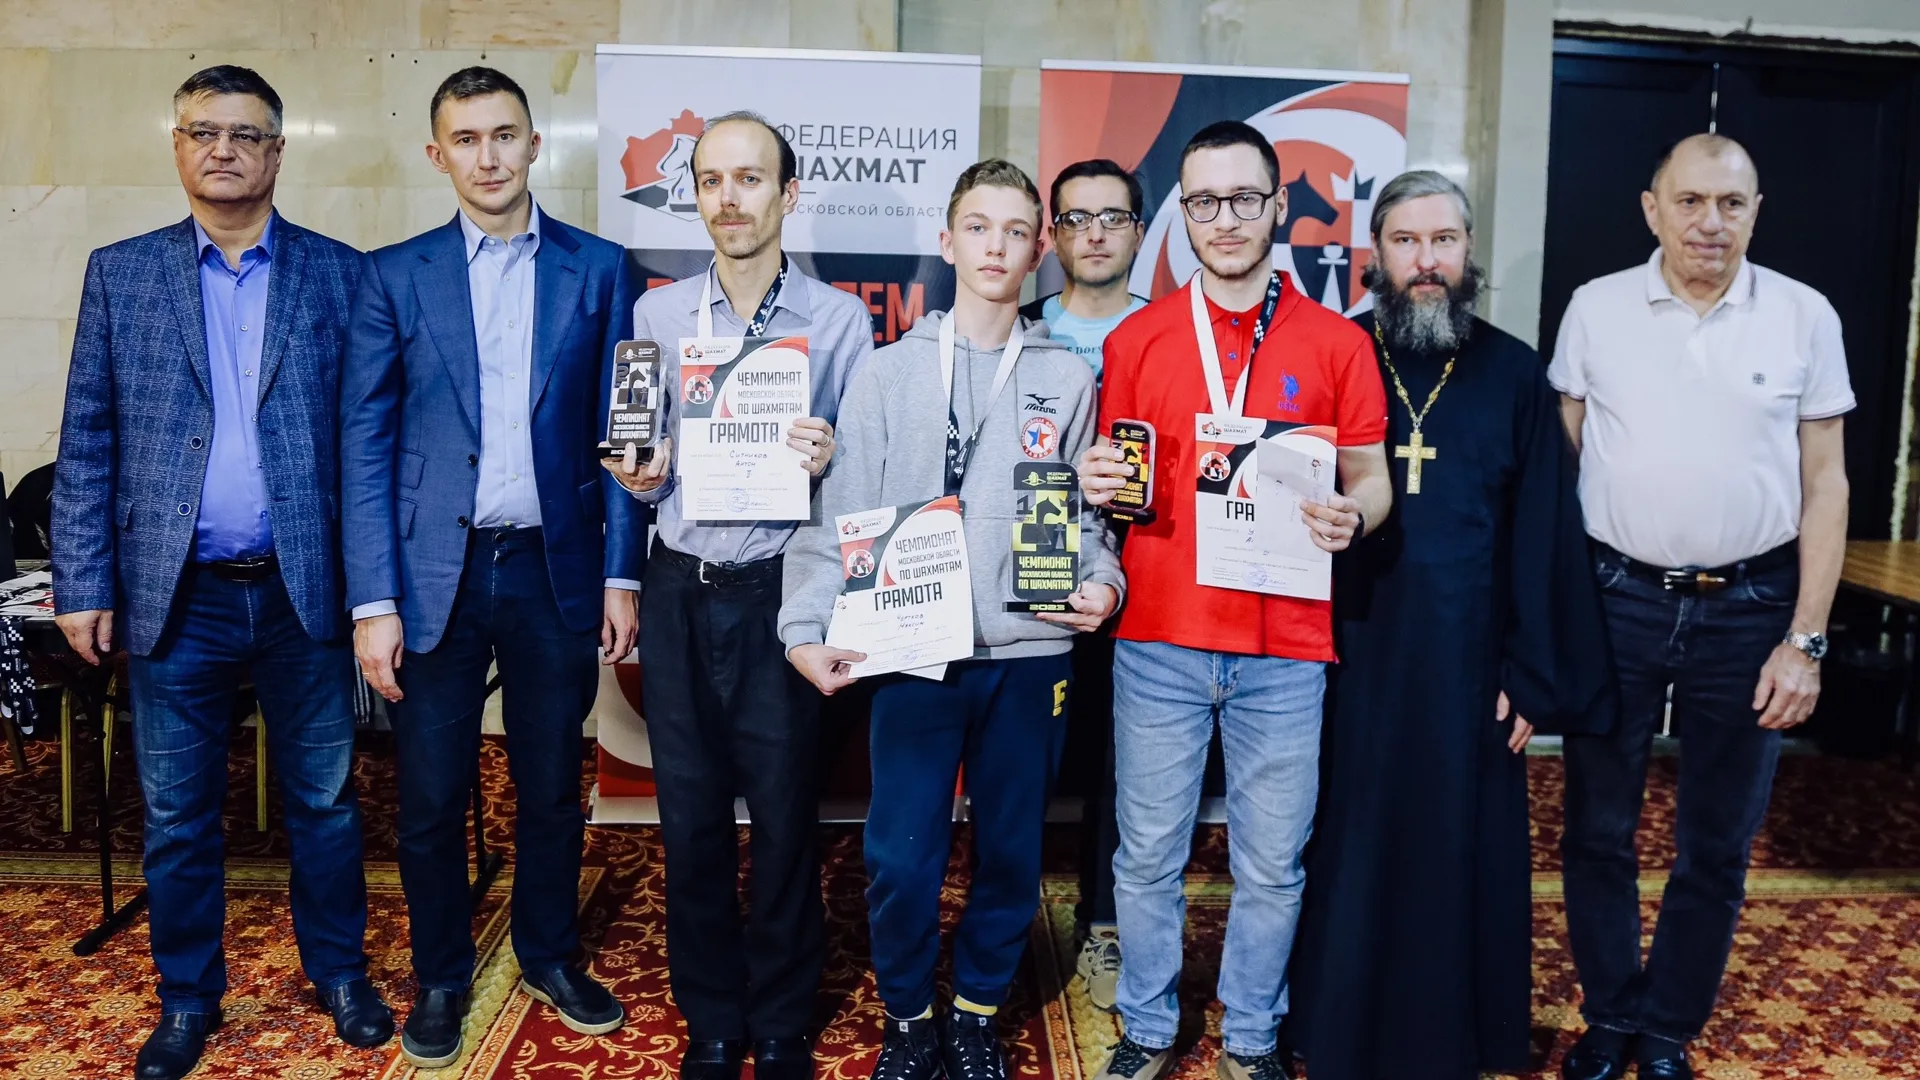 Шахматисты из Долгопрудного стали победителями и призерами открытого чемпионата Московской области